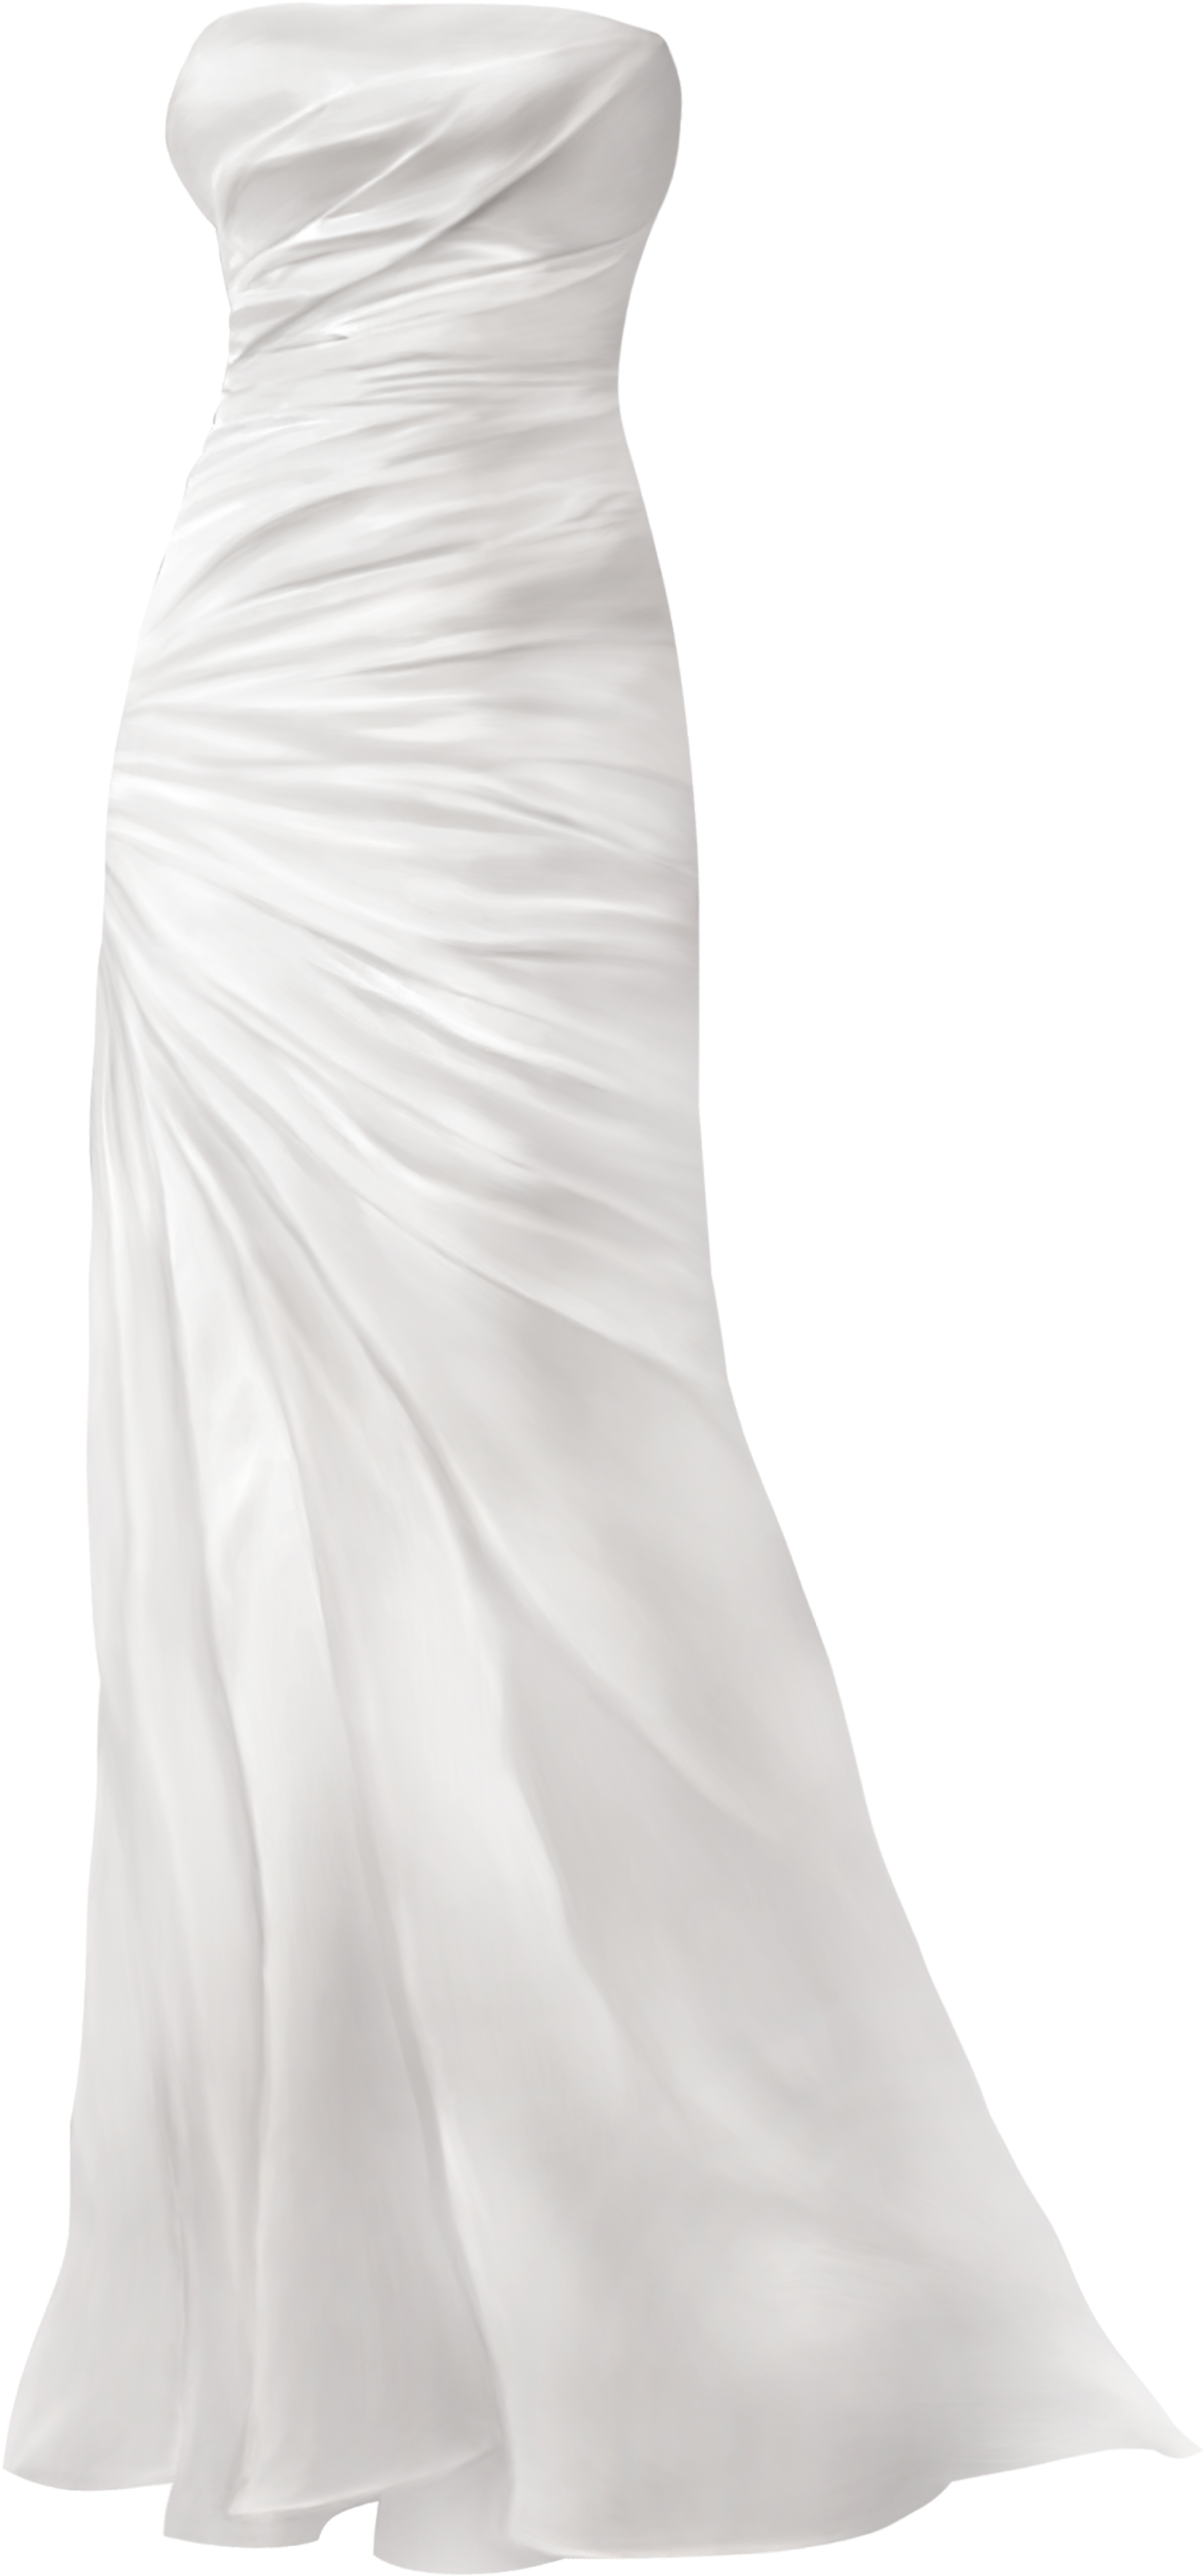 Simple Wedding Dress Png Clip Art - Clip Art (2236x4634), Png Download